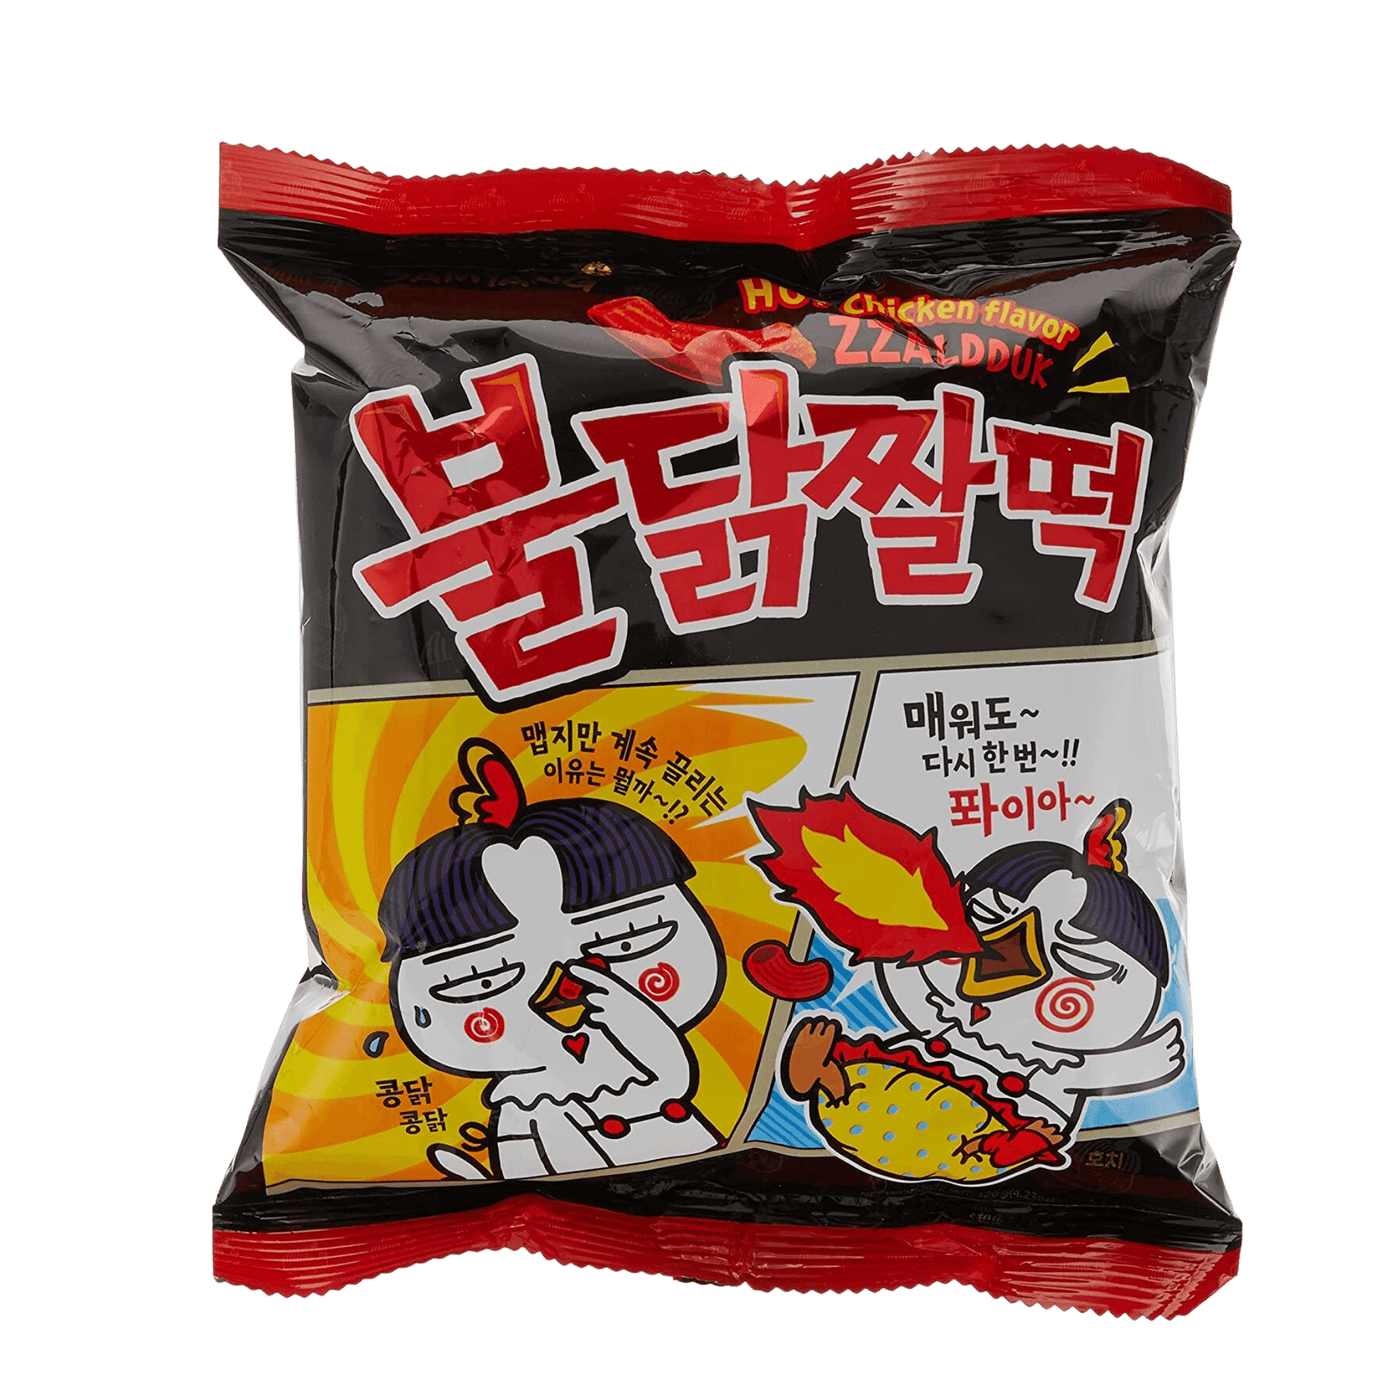 Samyang – Zzalduk Hot Chicken Flavor Snack